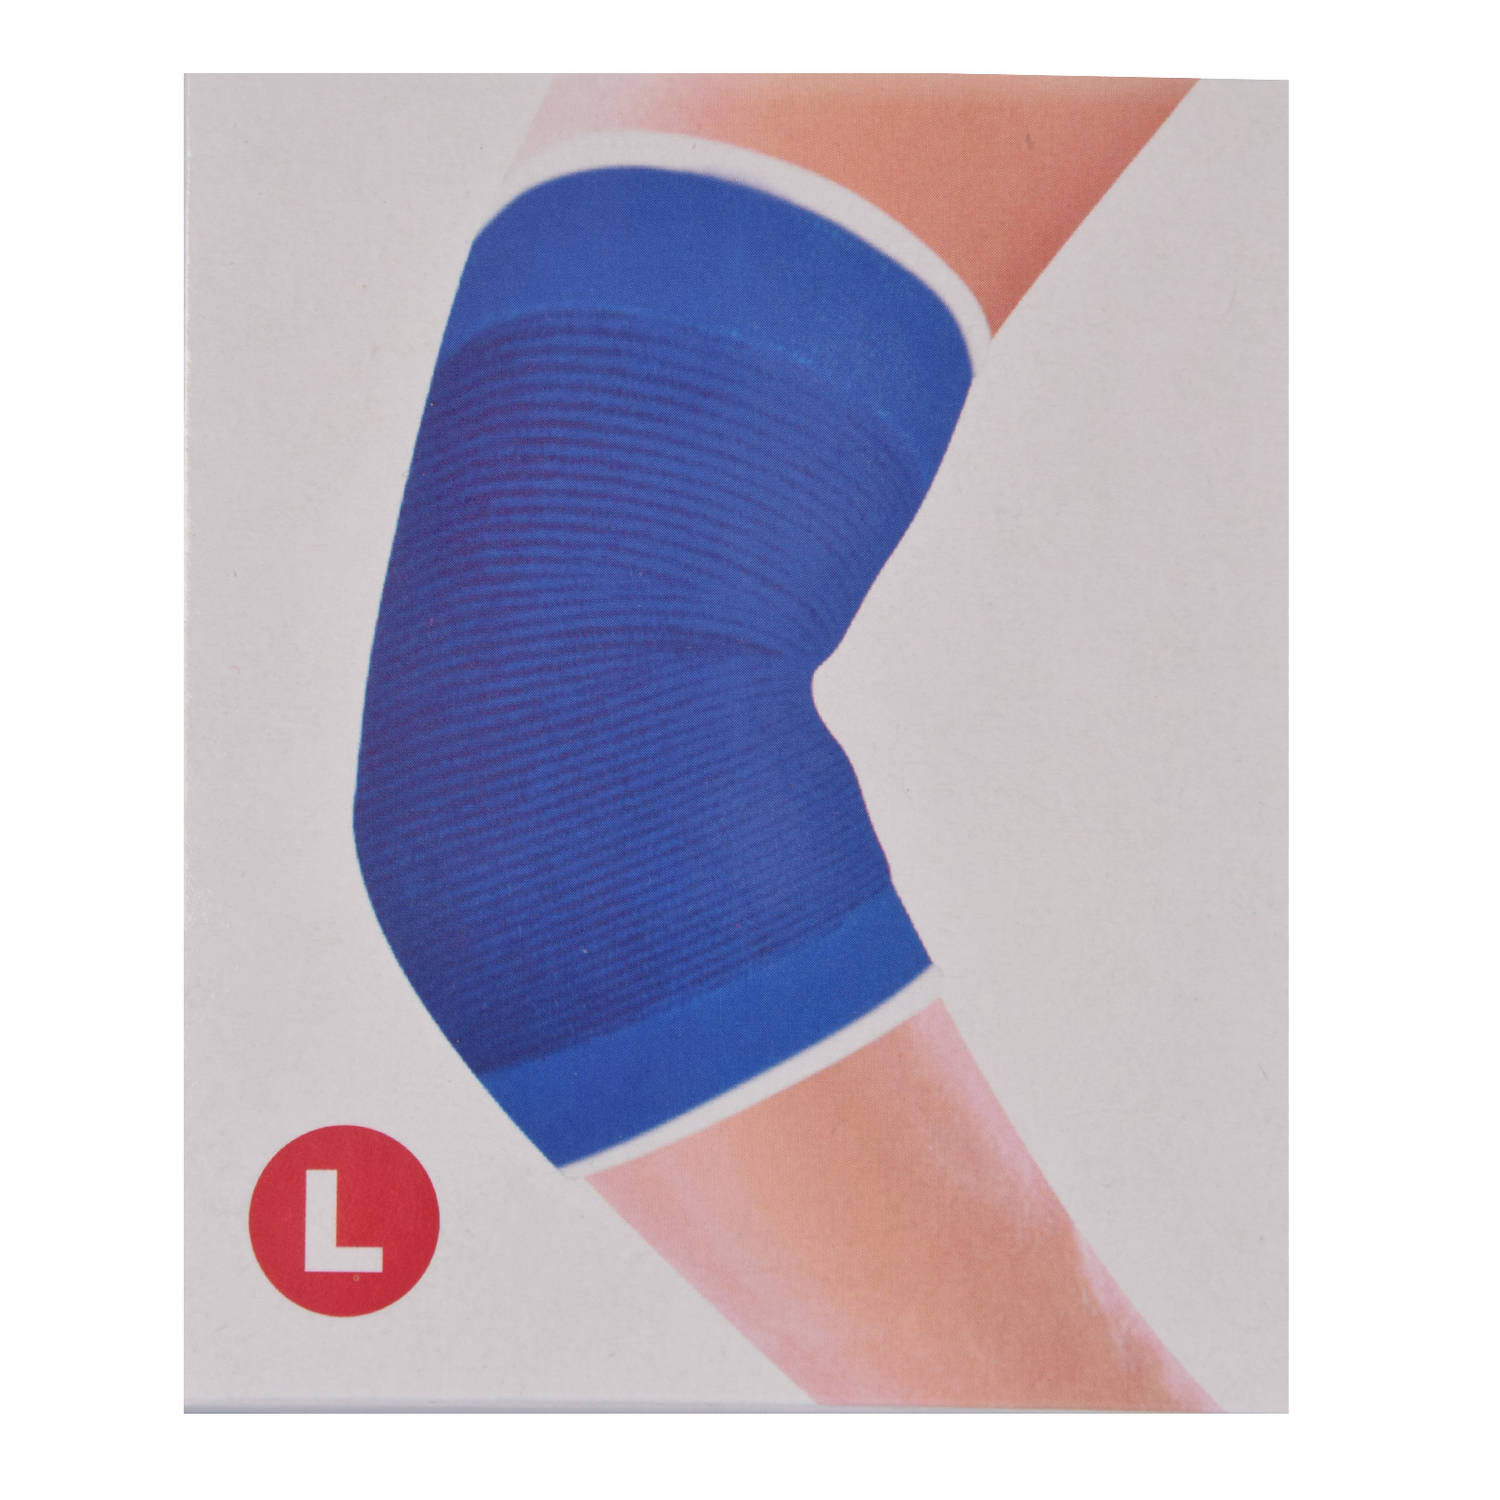 Professionele Elastische Elleboogbrace voor Sport en Fitness | Ademend en Comfortabel | Maat L - 23 cm hoogte in Blauw